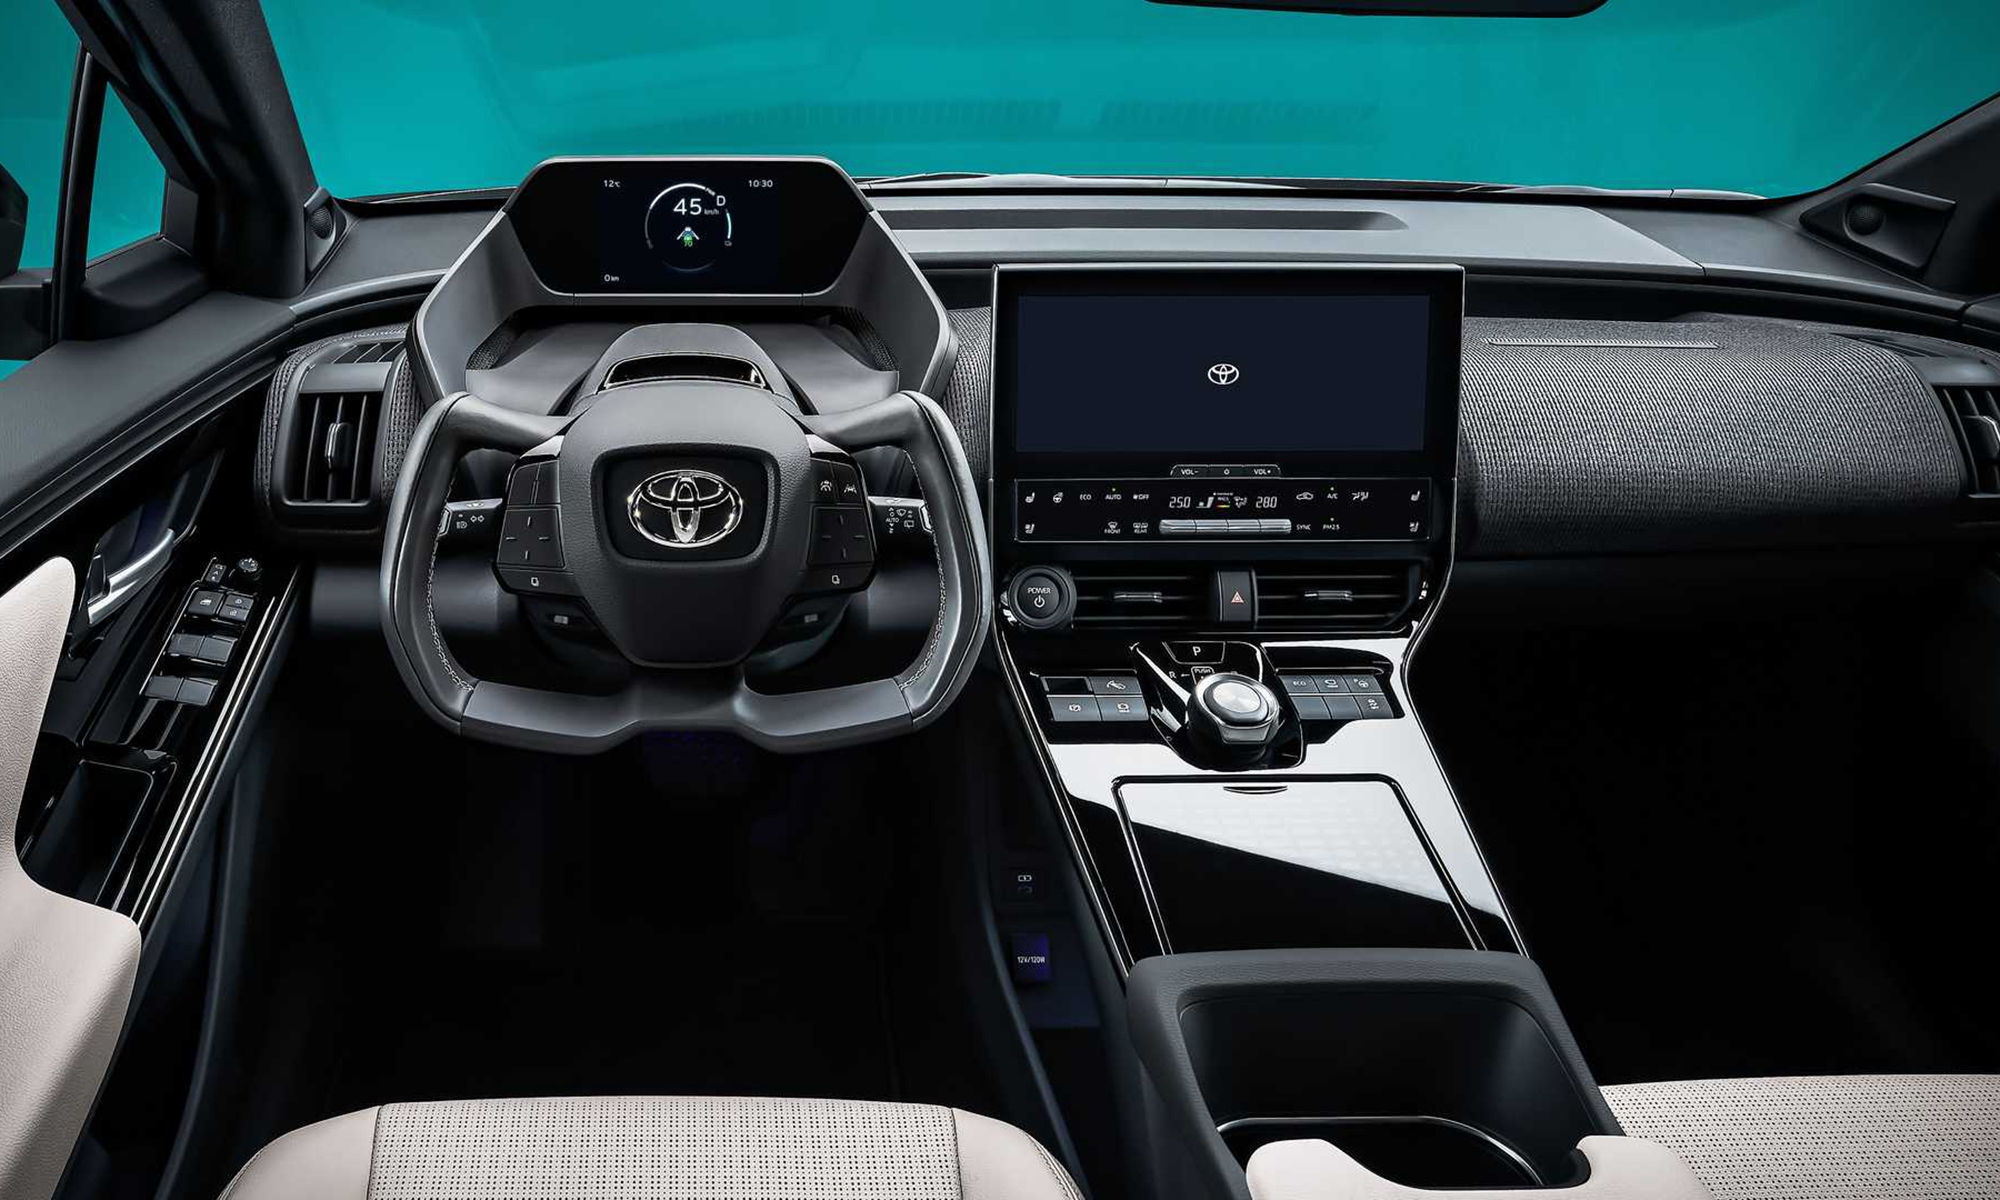 GAC Toyota, de la mano de Momenta y Huawei, lanzará el próximo año un vehículo eléctrico y autónomo al mercado.